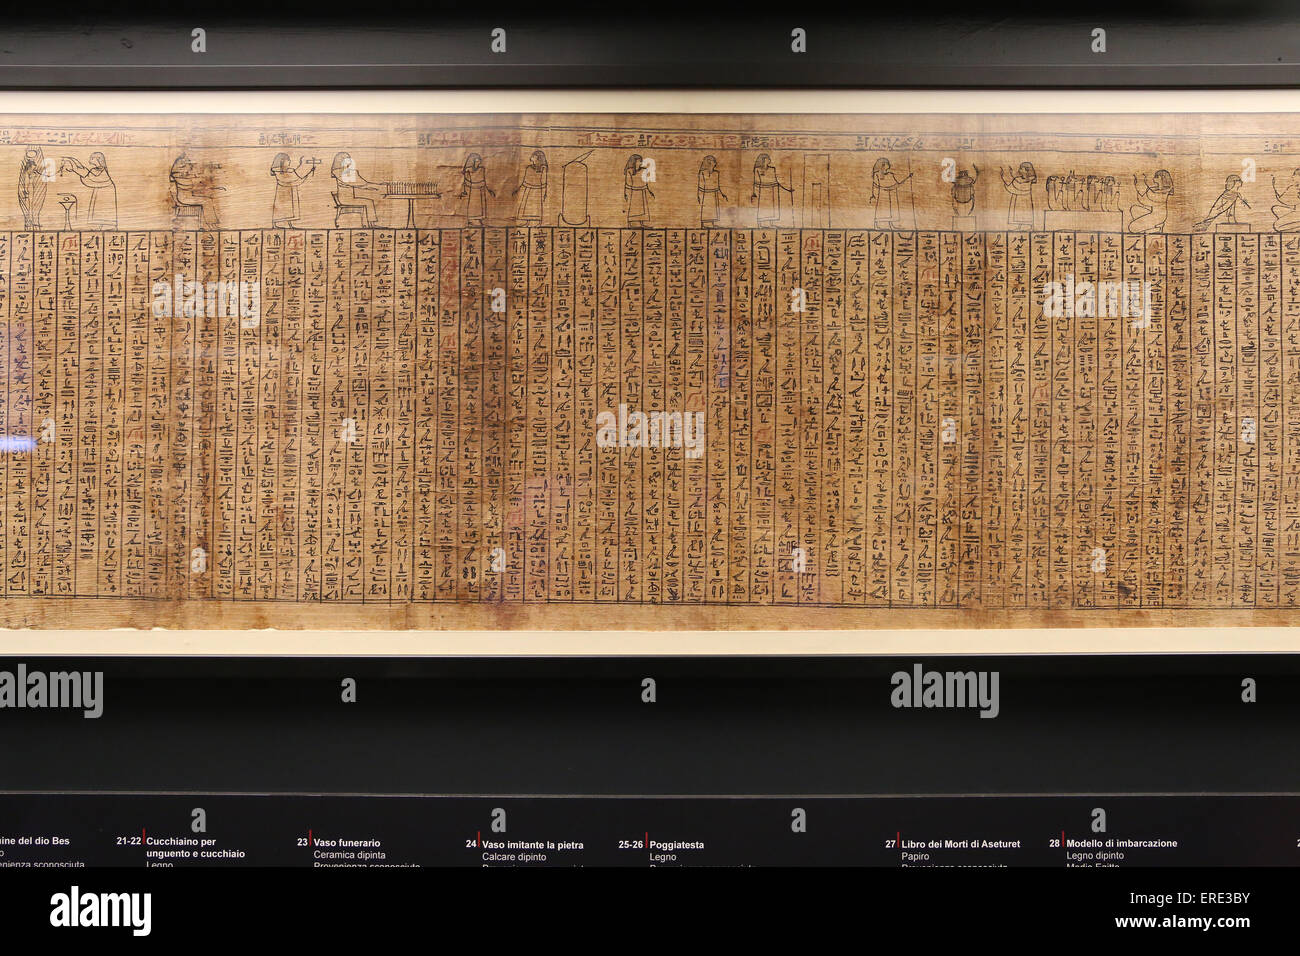 L'Egypte ancienne. Livre des morts d'Asetweret. Papyrus. Provenance inconnue. Début de l'époque ptolémaïque. 4ème-3ème siècle avant JC. Vatican Banque D'Images